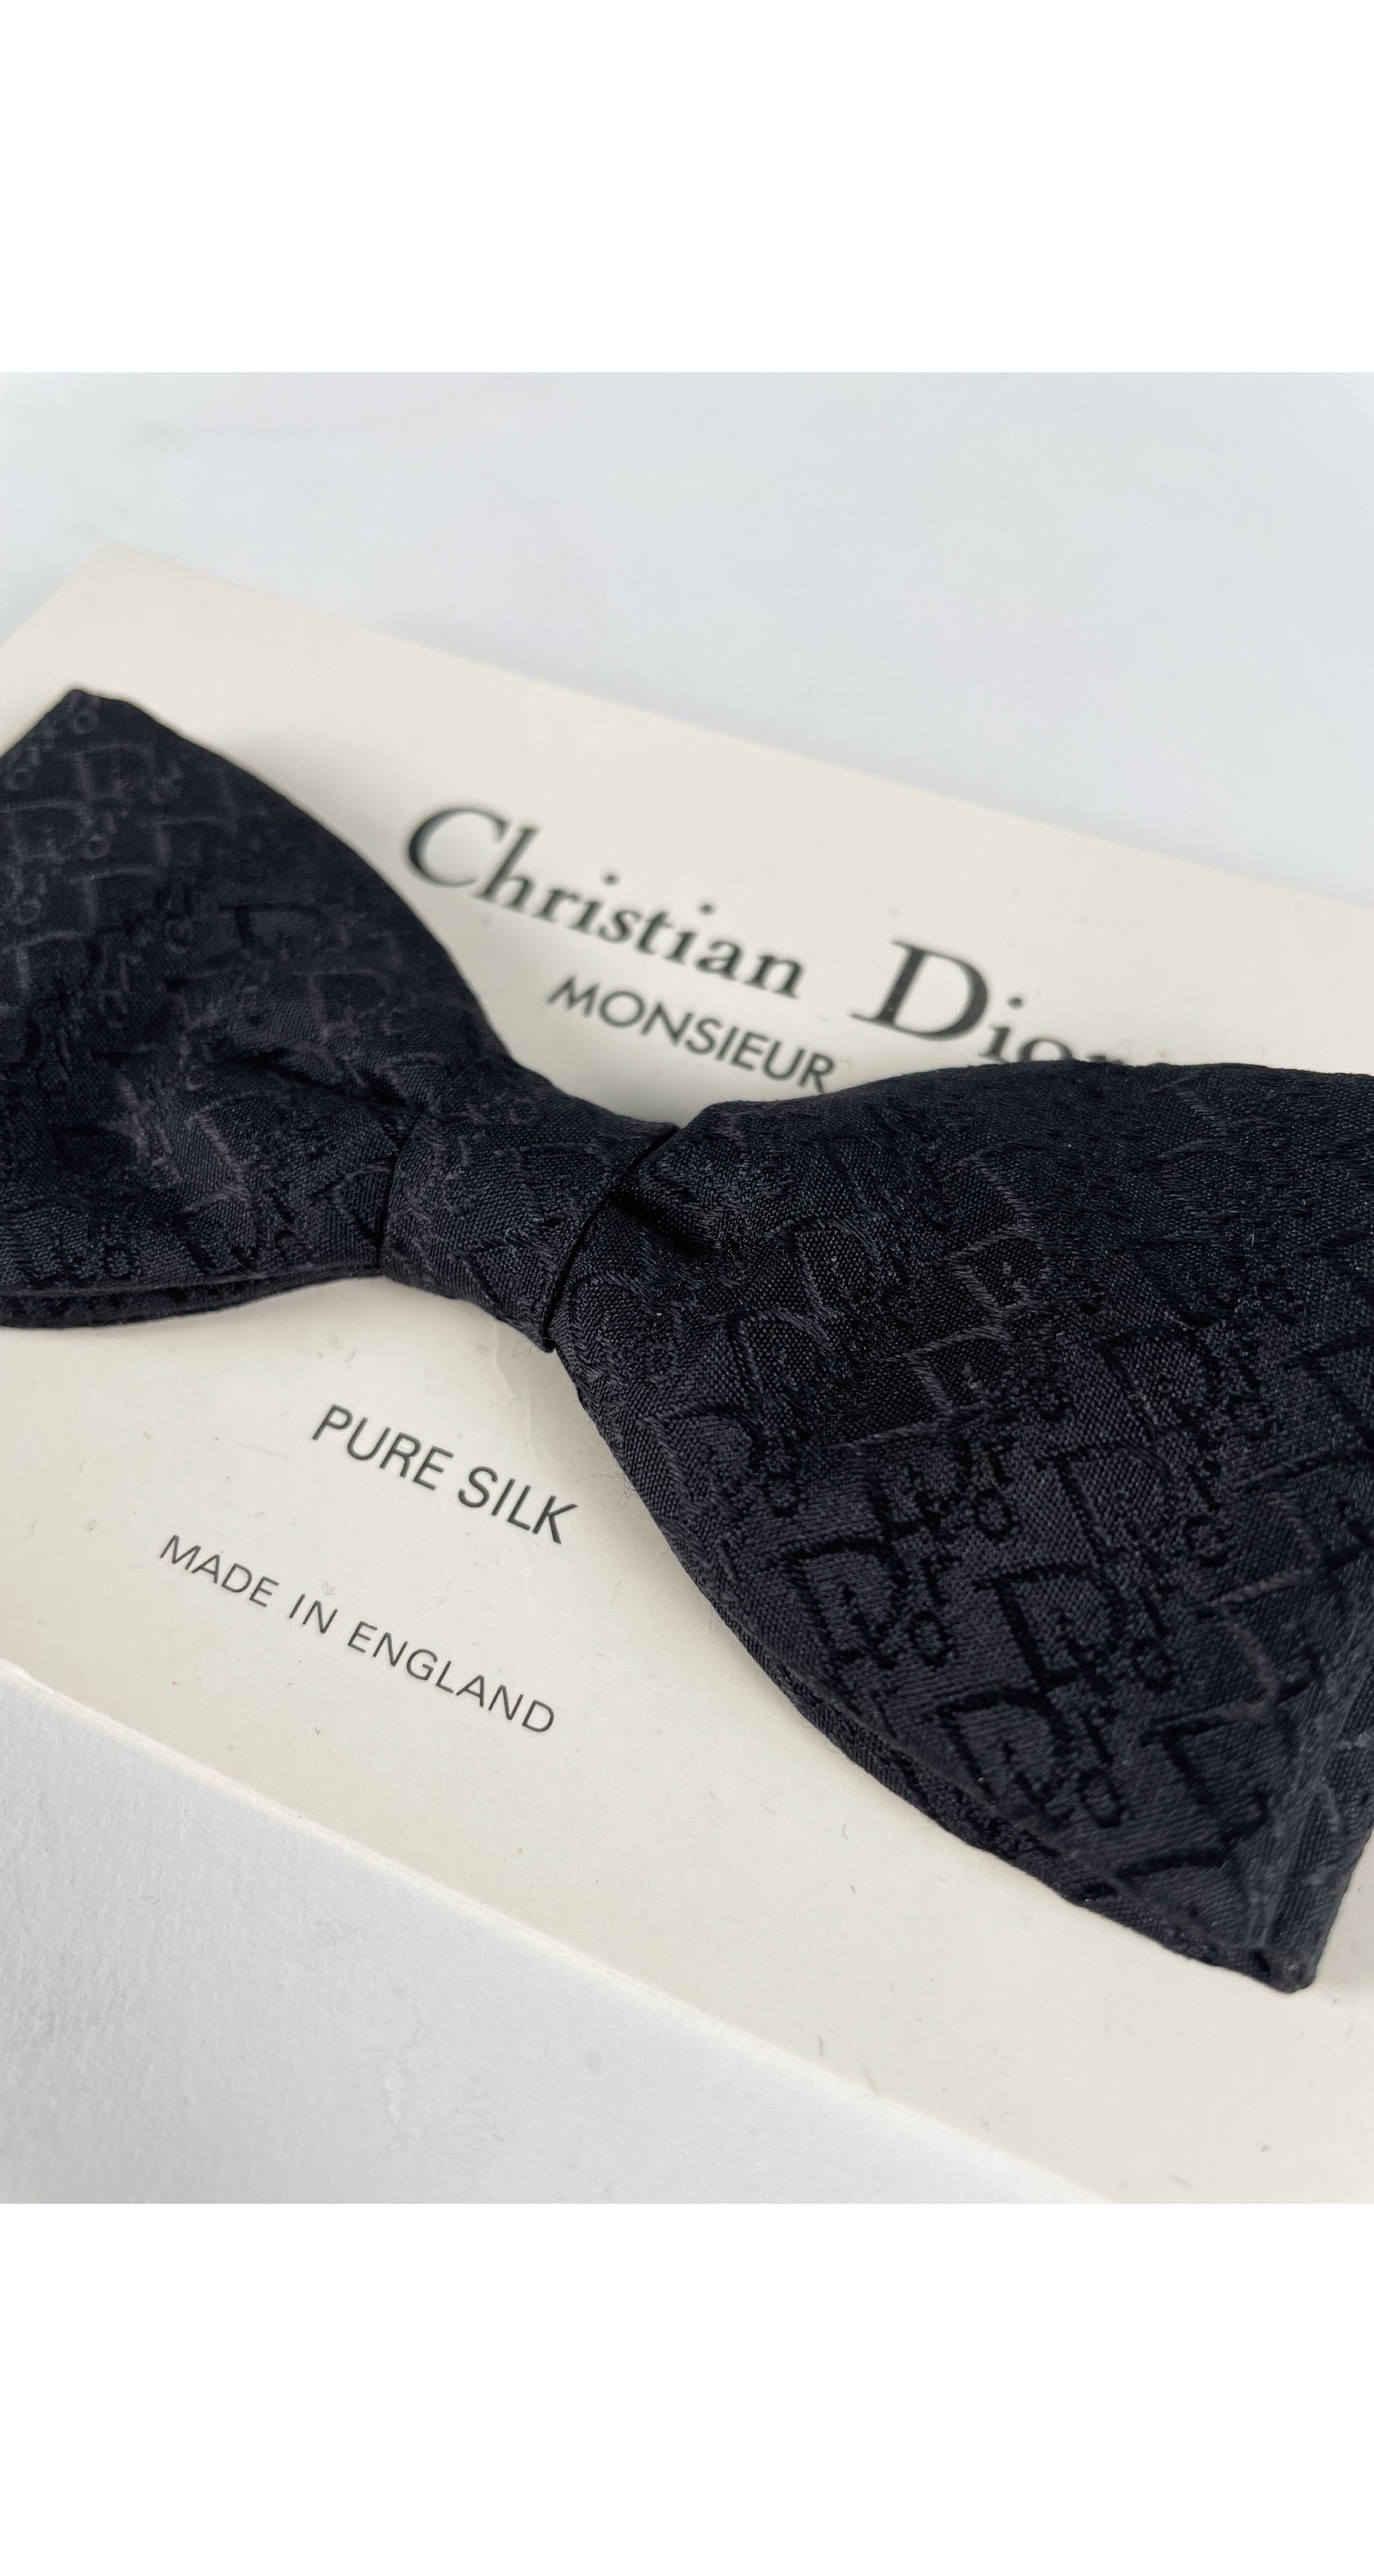 Dior - Bow Tie Black Silk - Women